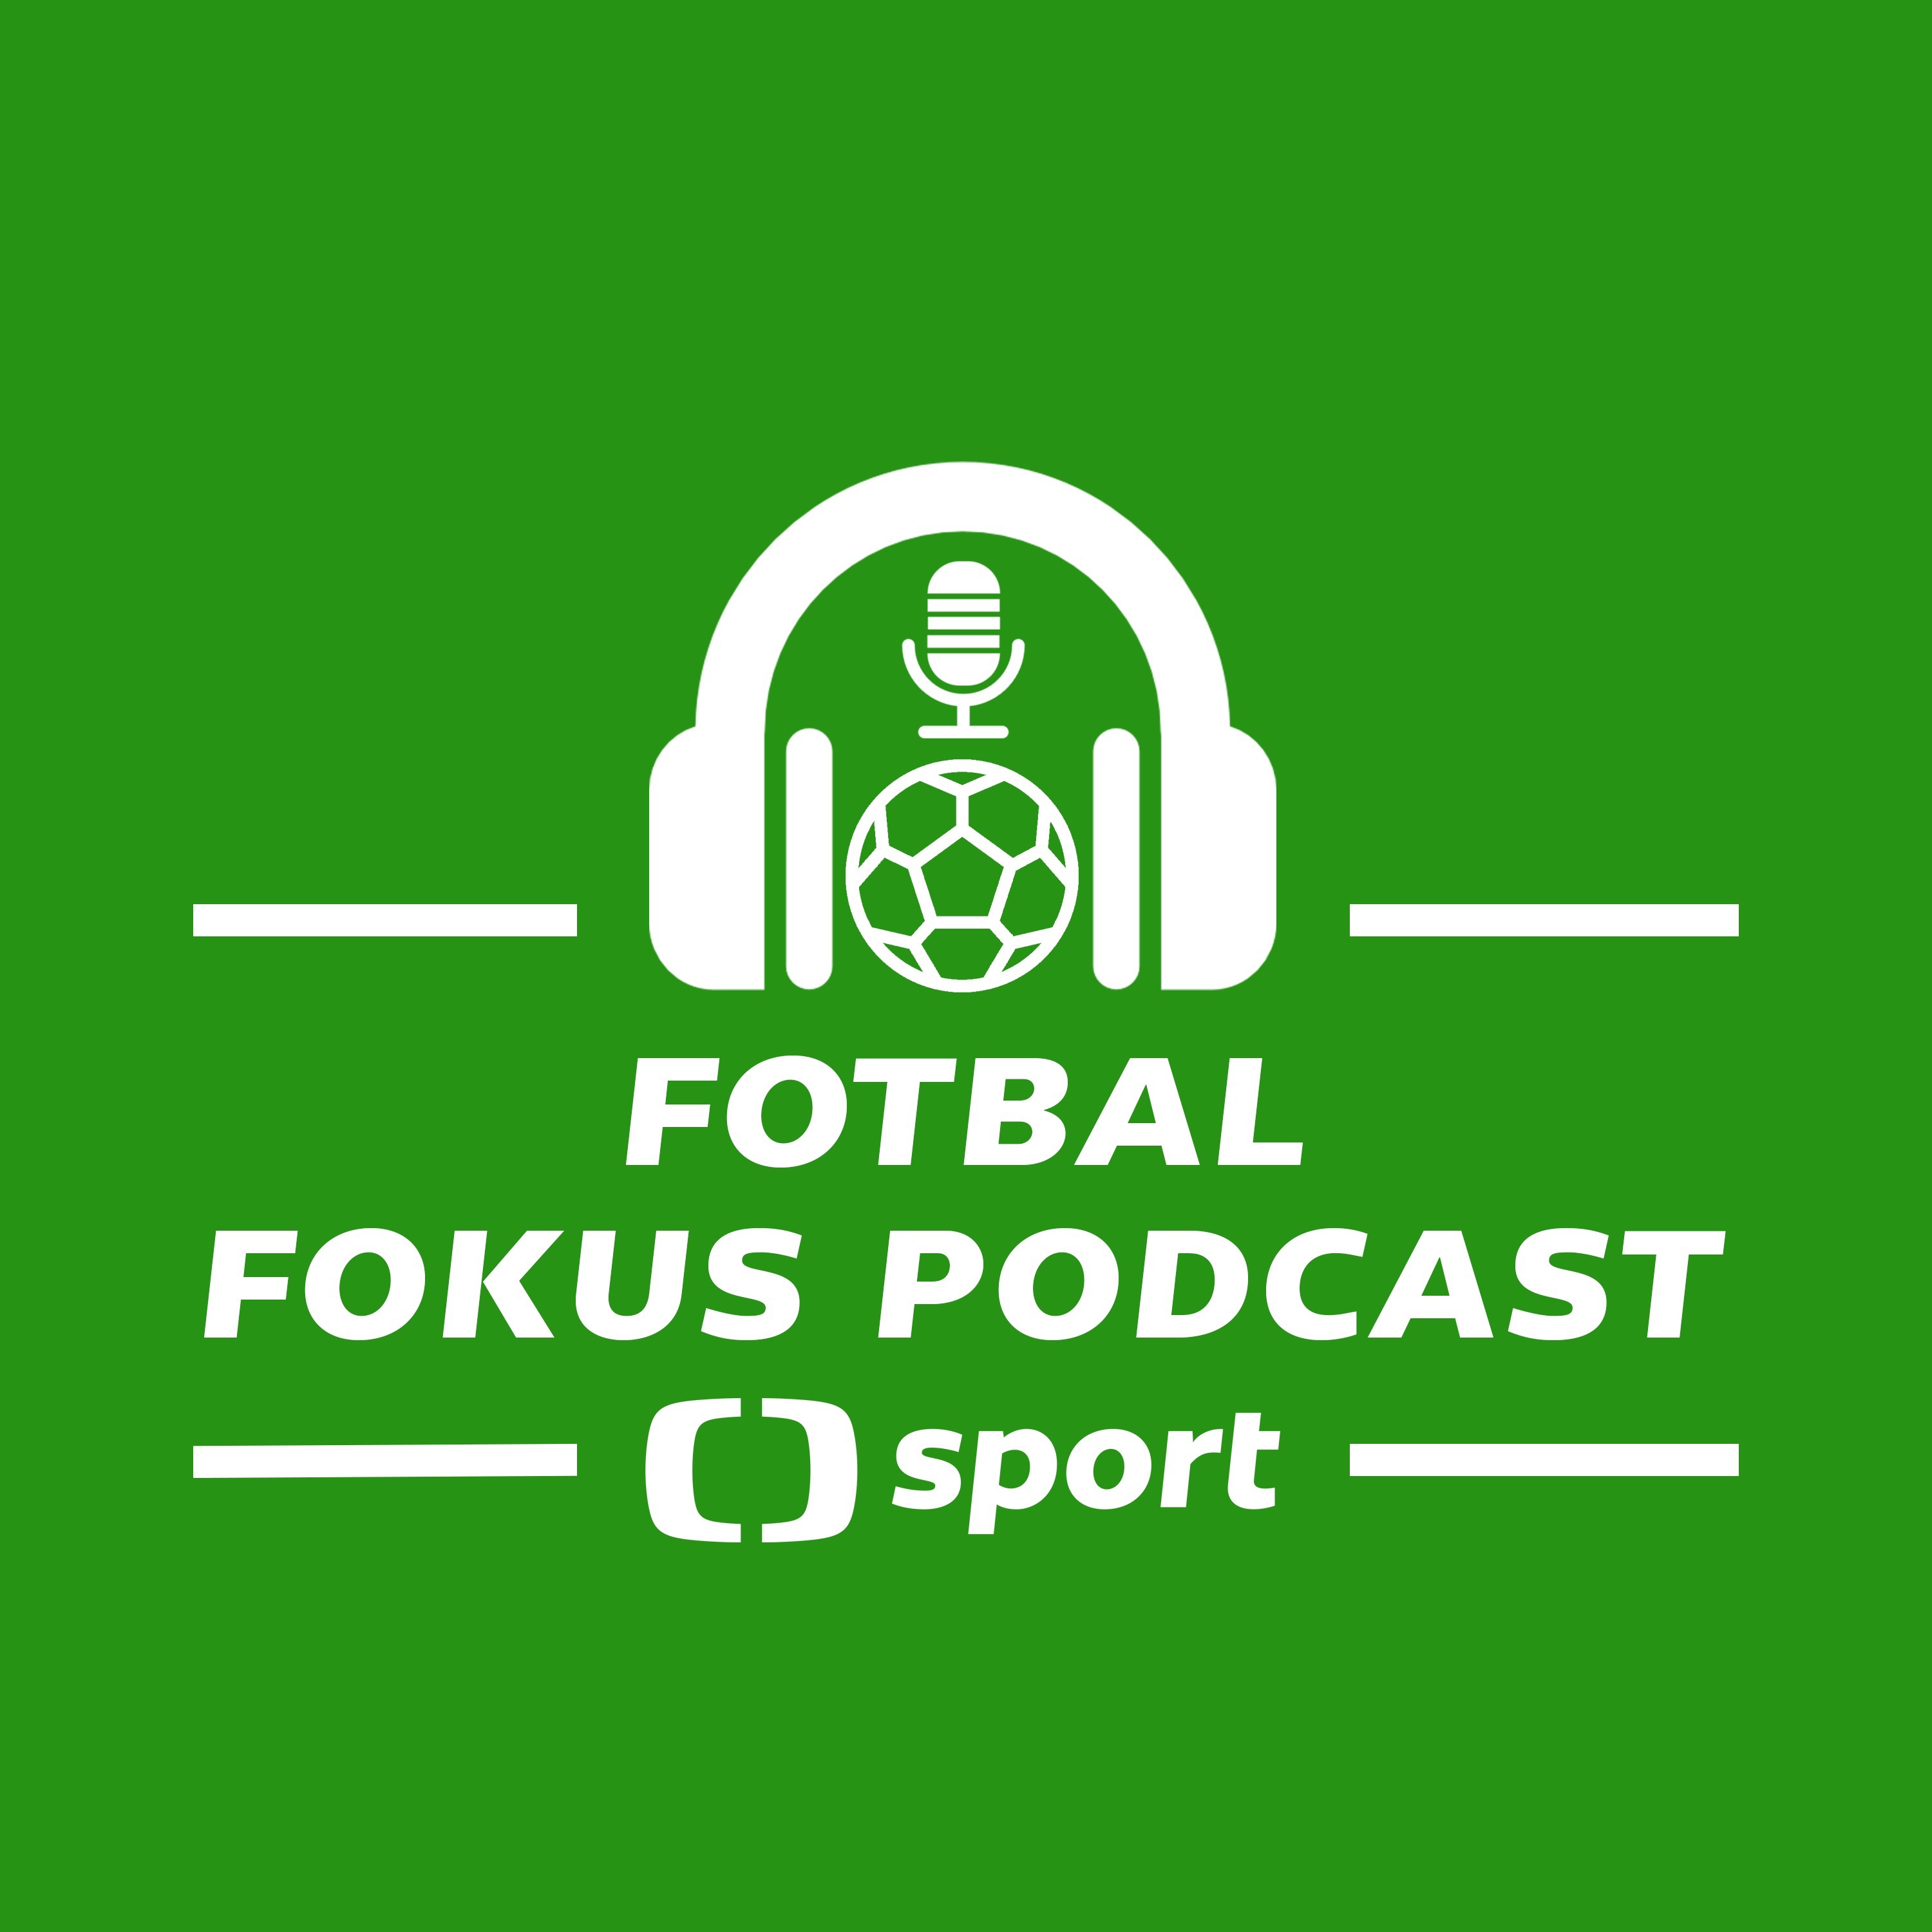 Fotbal fokus podcast: Má nákup Tijaniho pro Slavii smysl a co vidí Plzeň v Díazovi?